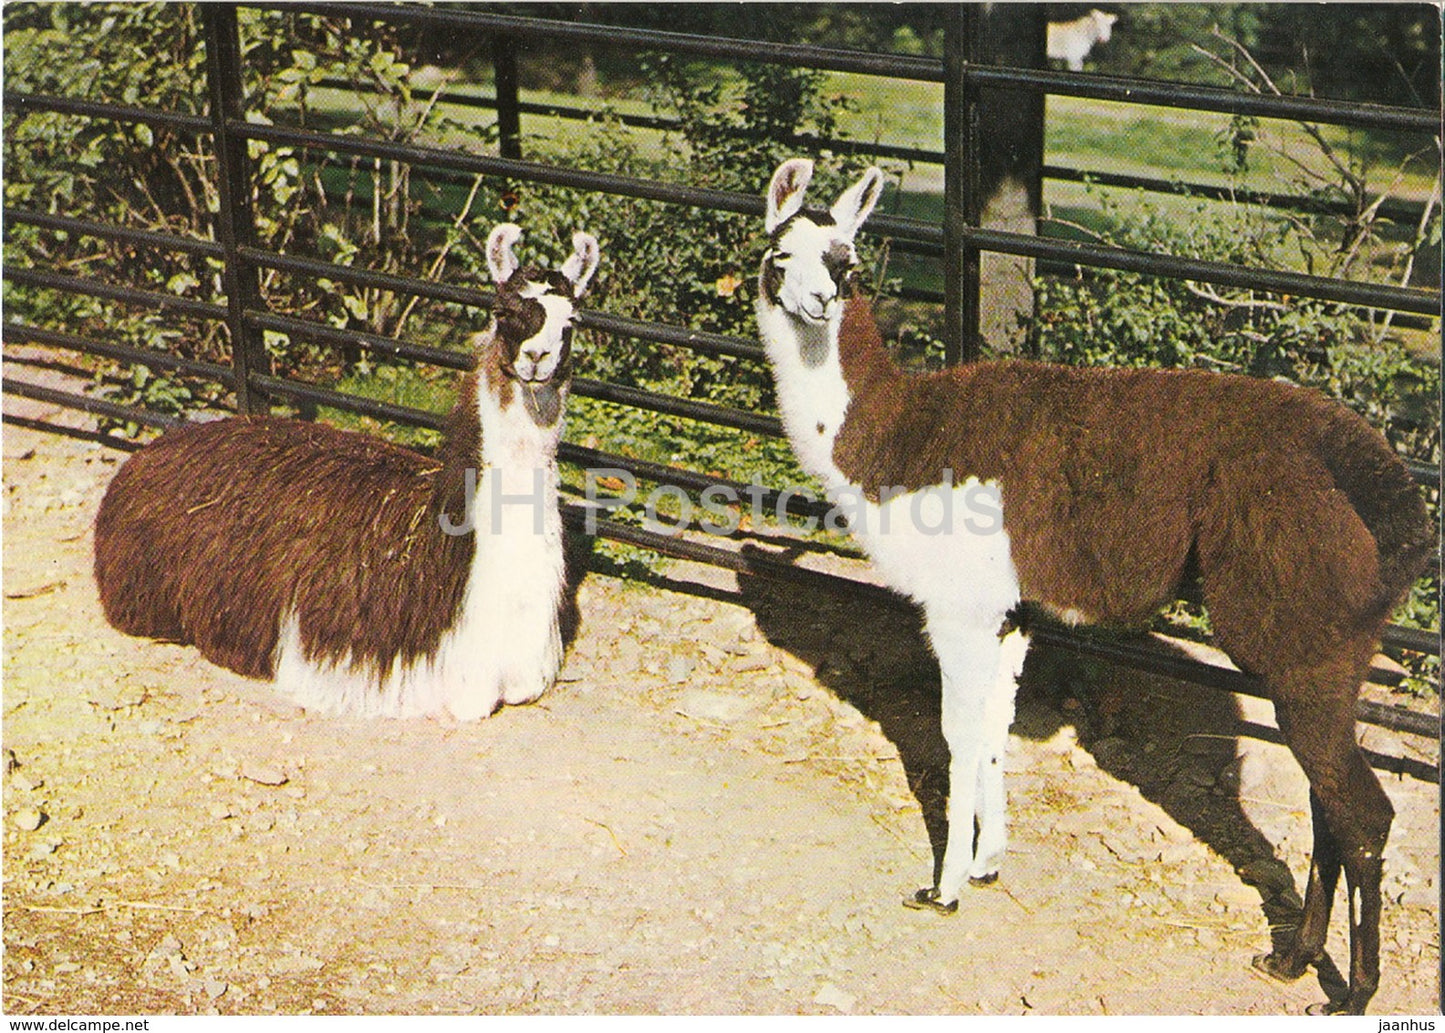 Llama - Lama glama - Zoo - Czechoslovakia - Czech Republic - unused - JH Postcards